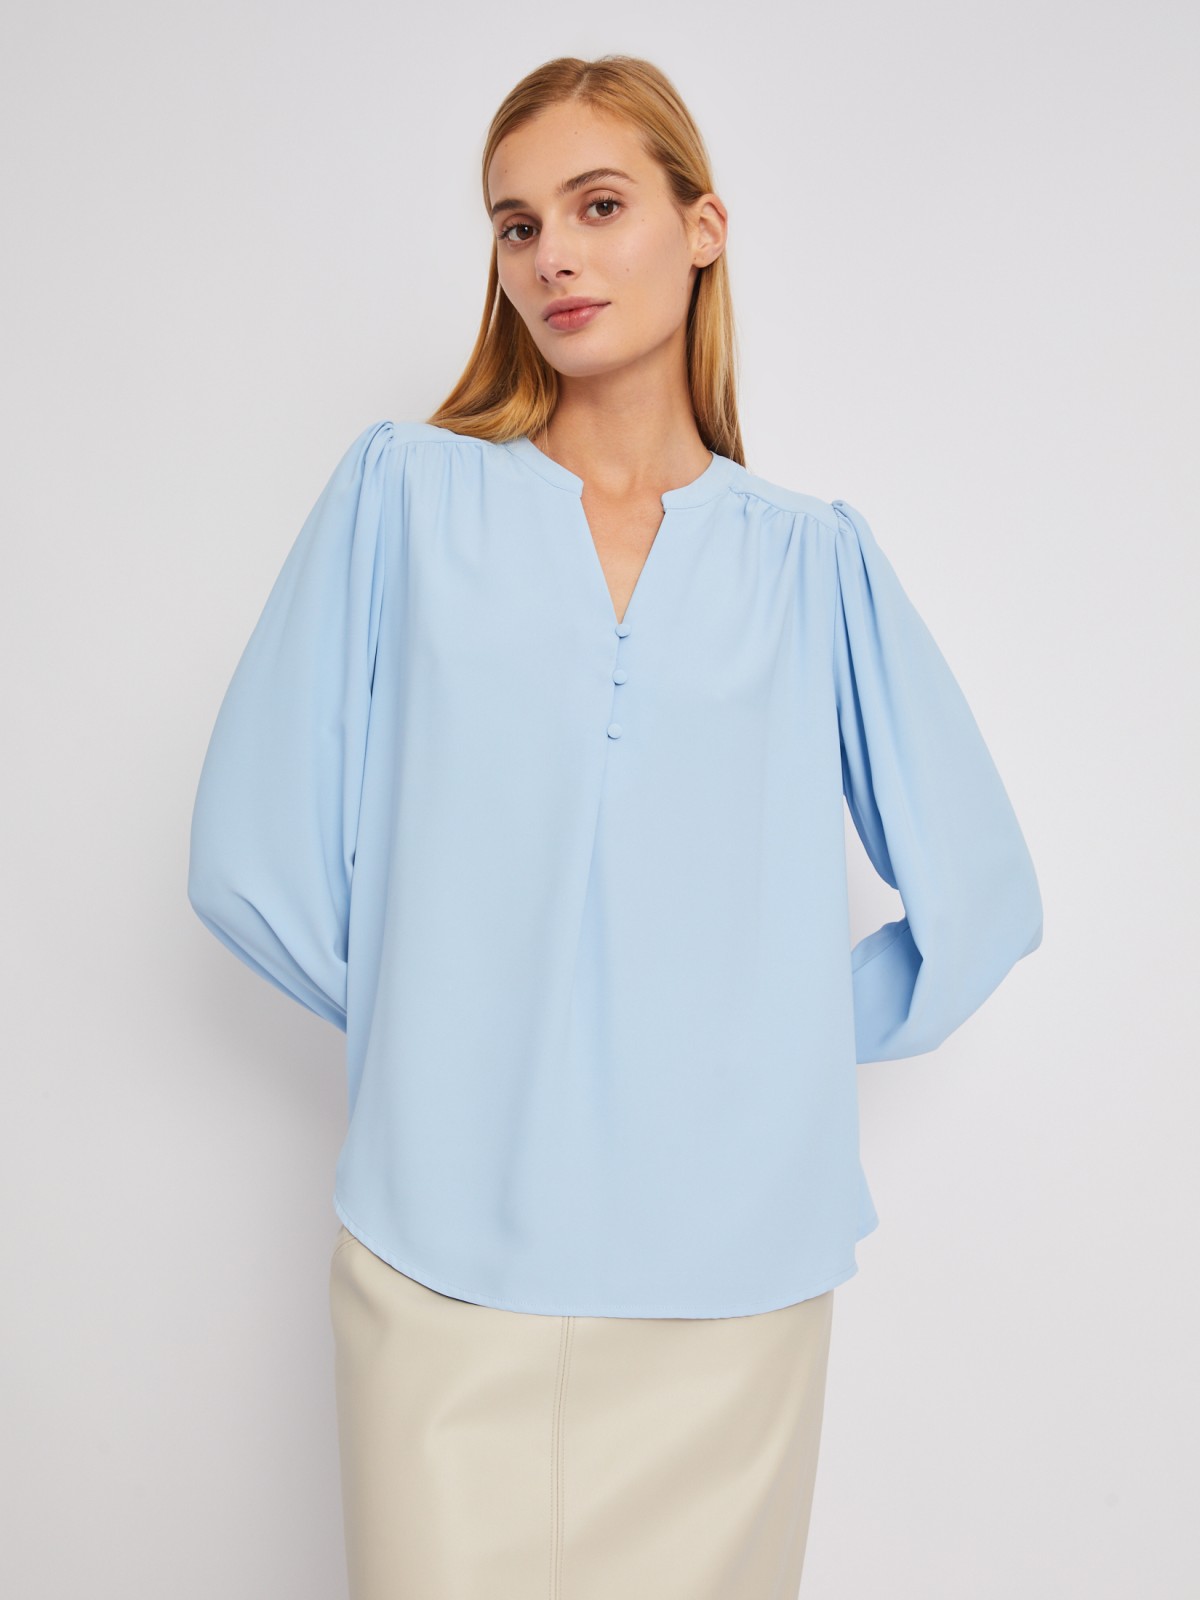 Блузка с объёмными рукавами и V-образным вырезом на груди zolla 024121159122, цвет светло-голубой, размер XS - фото 3